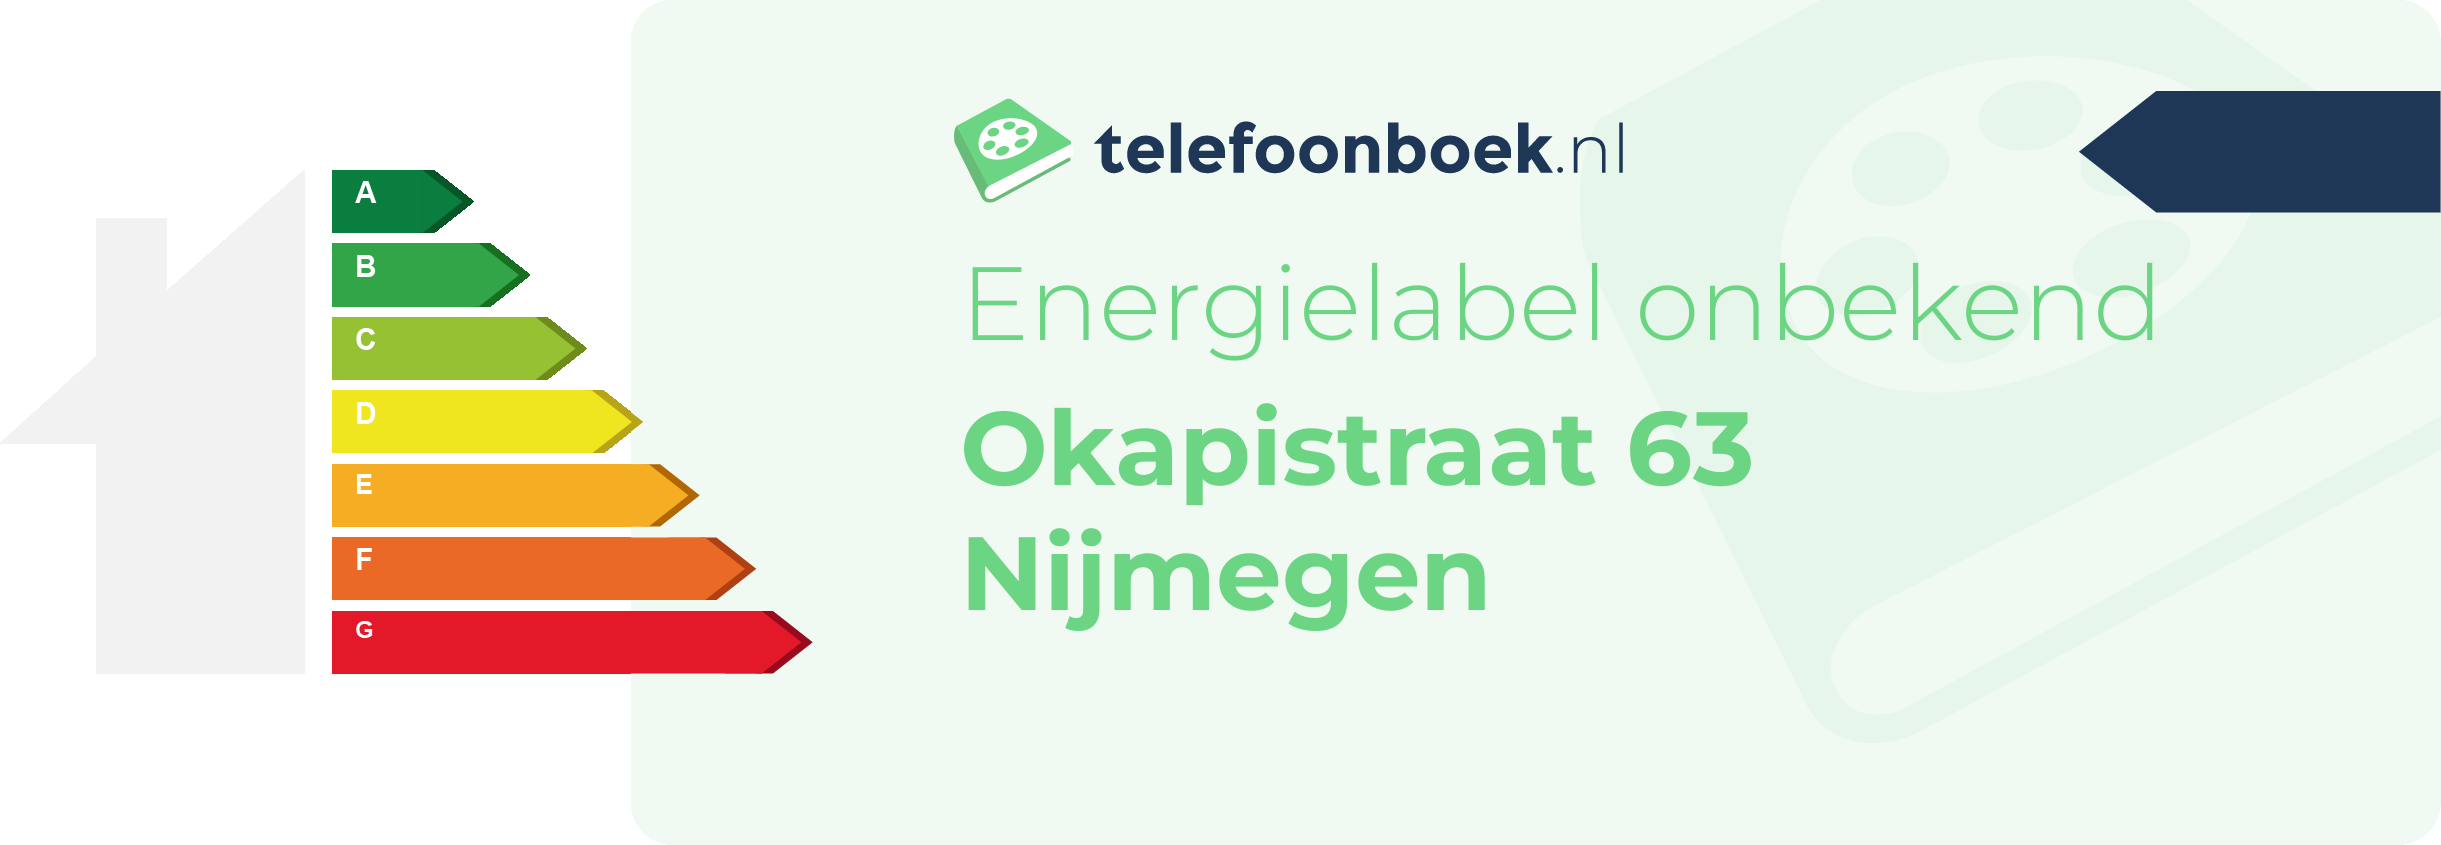 Energielabel Okapistraat 63 Nijmegen